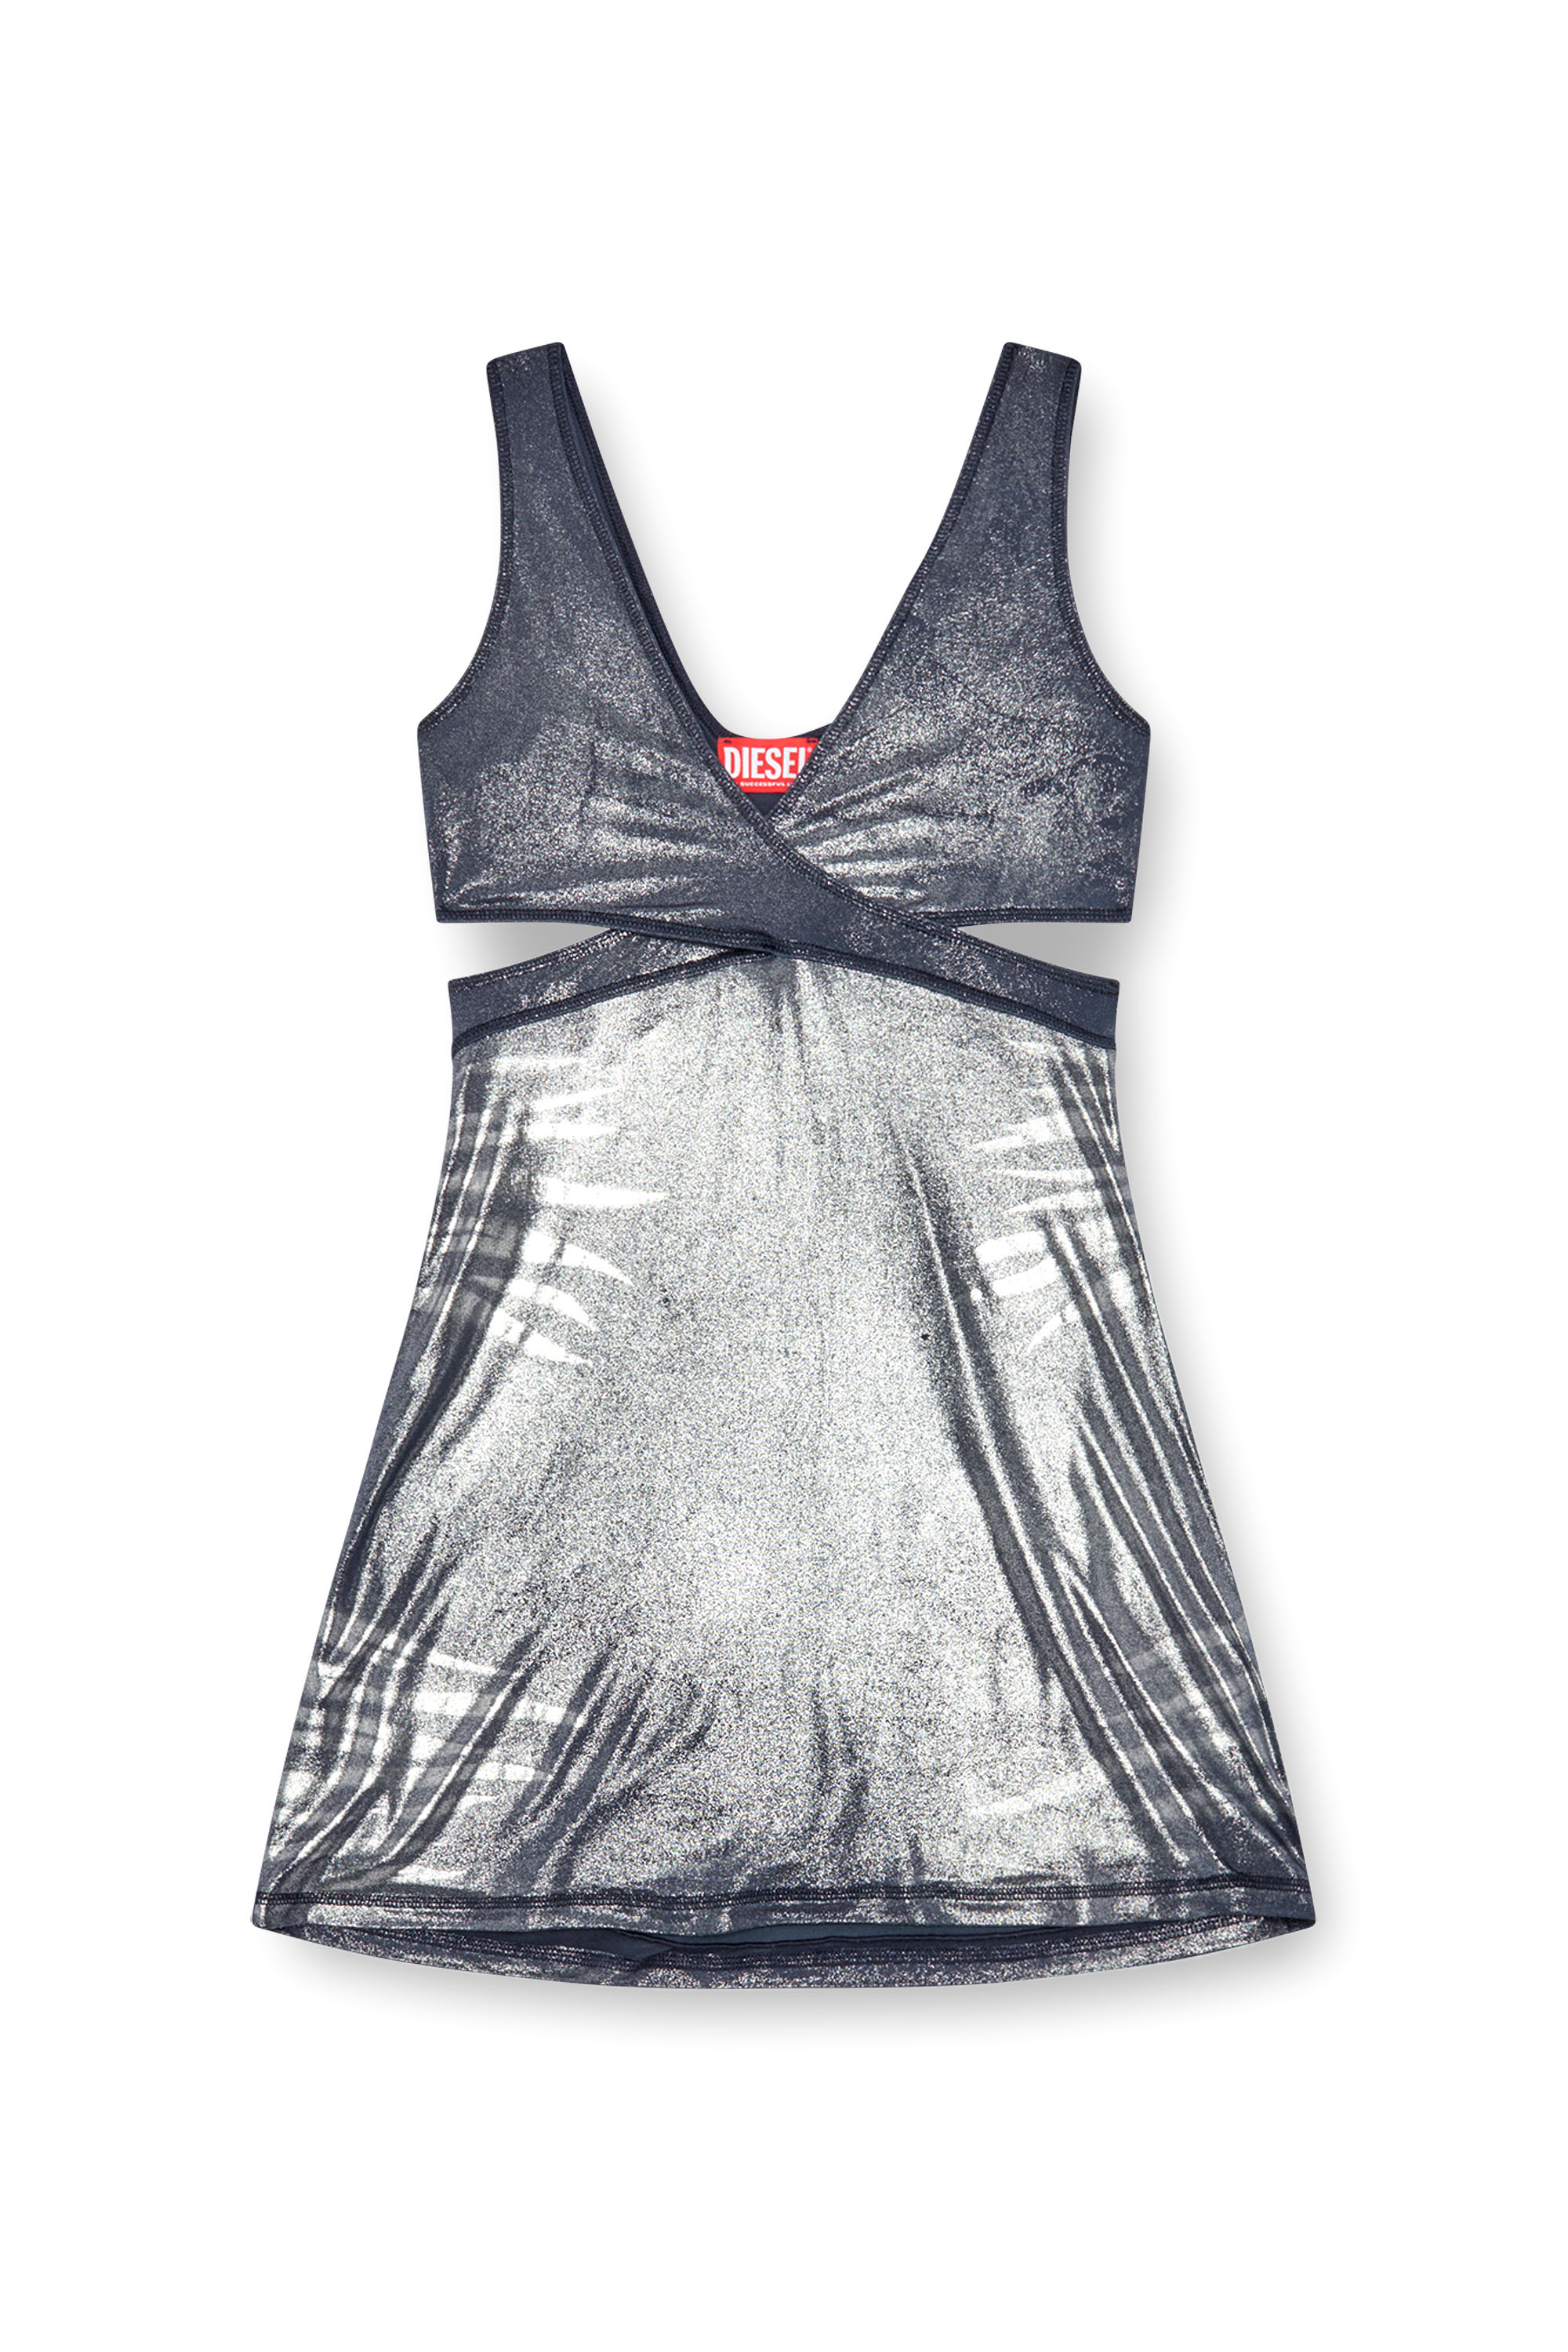 Diesel - D-FARFY, Damen Kurzes Cut-out-Kleid aus Metallic-Jersey in Bunt - Image 2